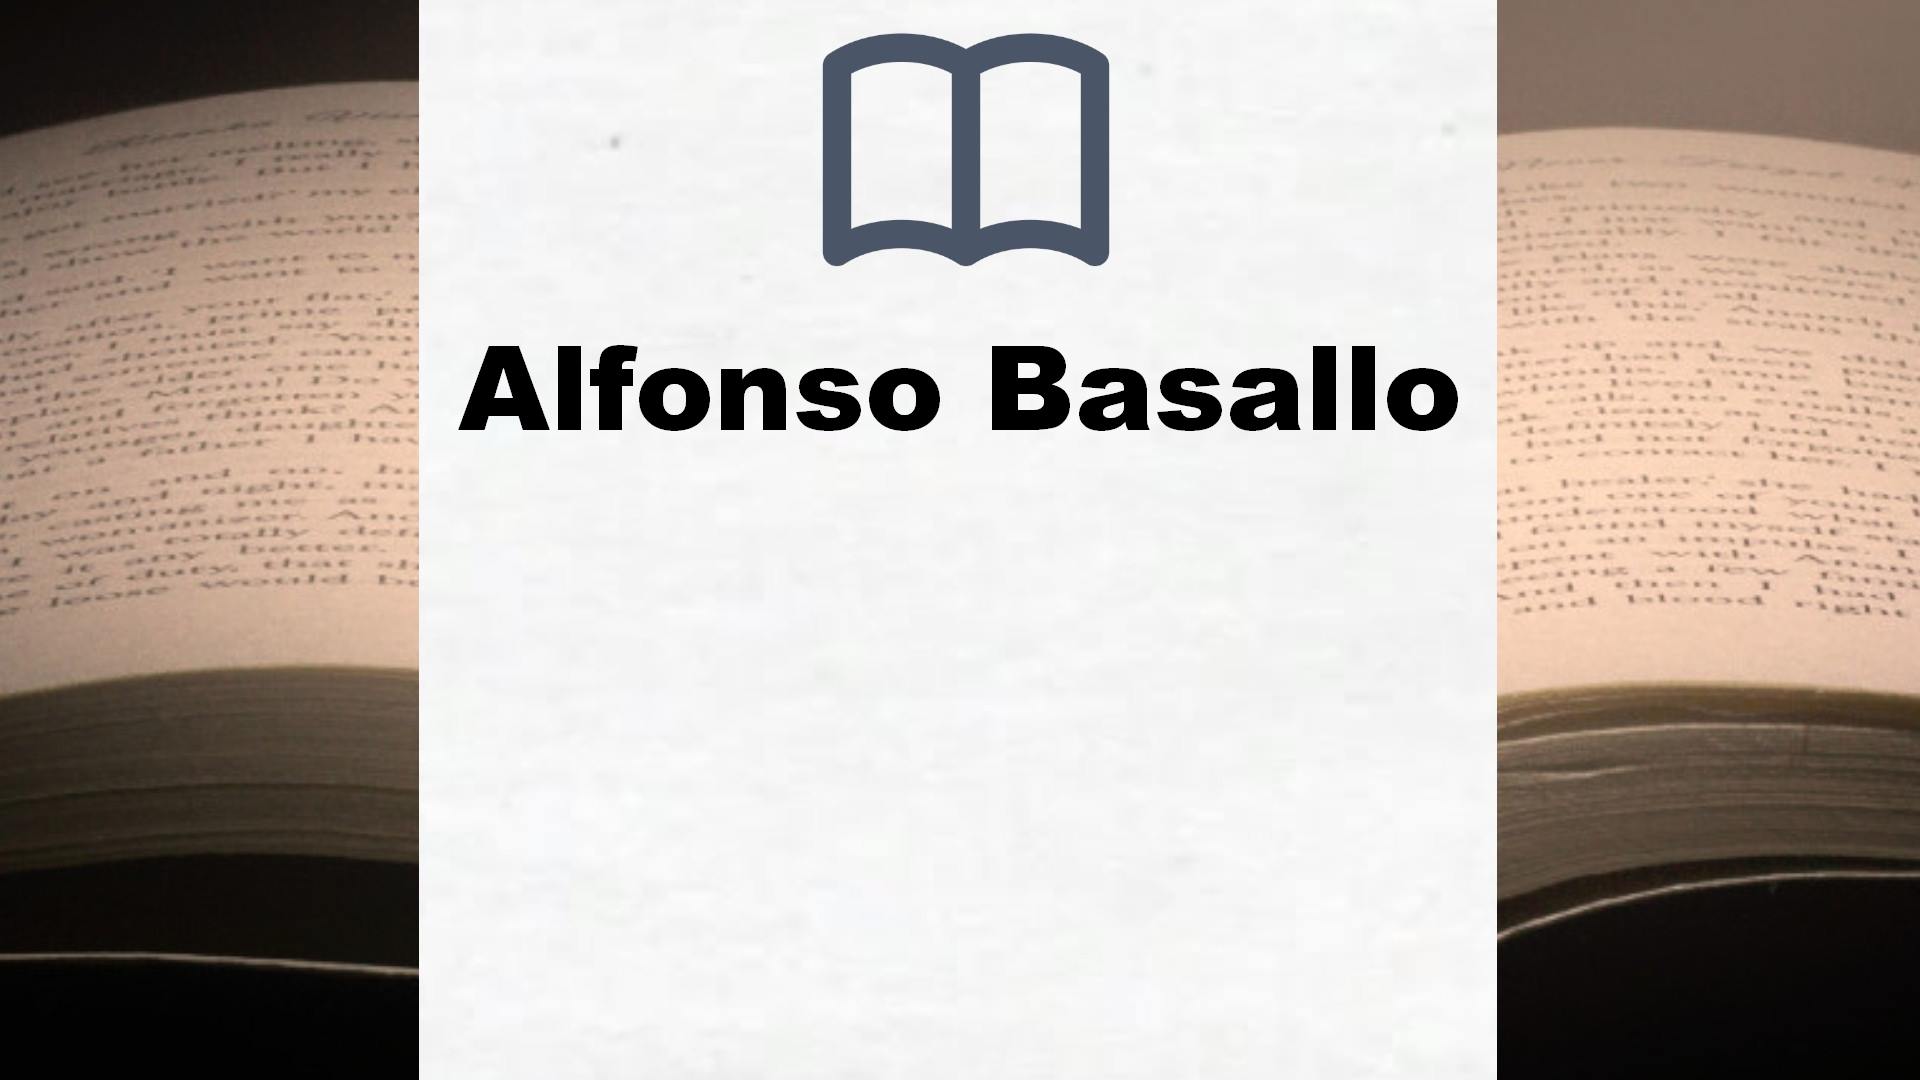 Libros Alfonso Basallo